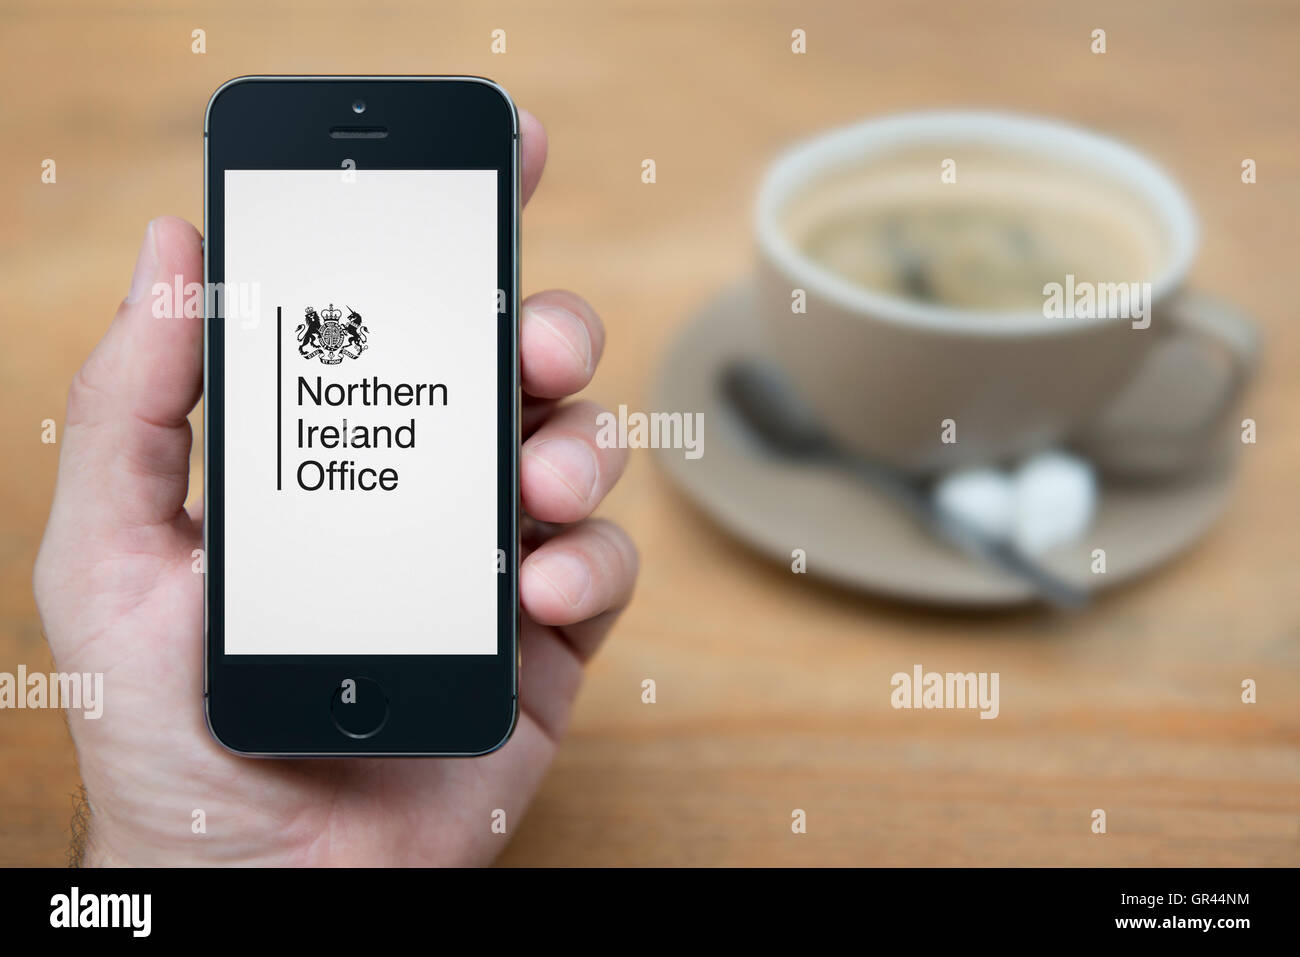 Ein Mann schaut auf seinem iPhone, der britischen Regierung Northern Ireland Office Kamm (nur zur redaktionellen Verwendung) anzeigt. Stockfoto